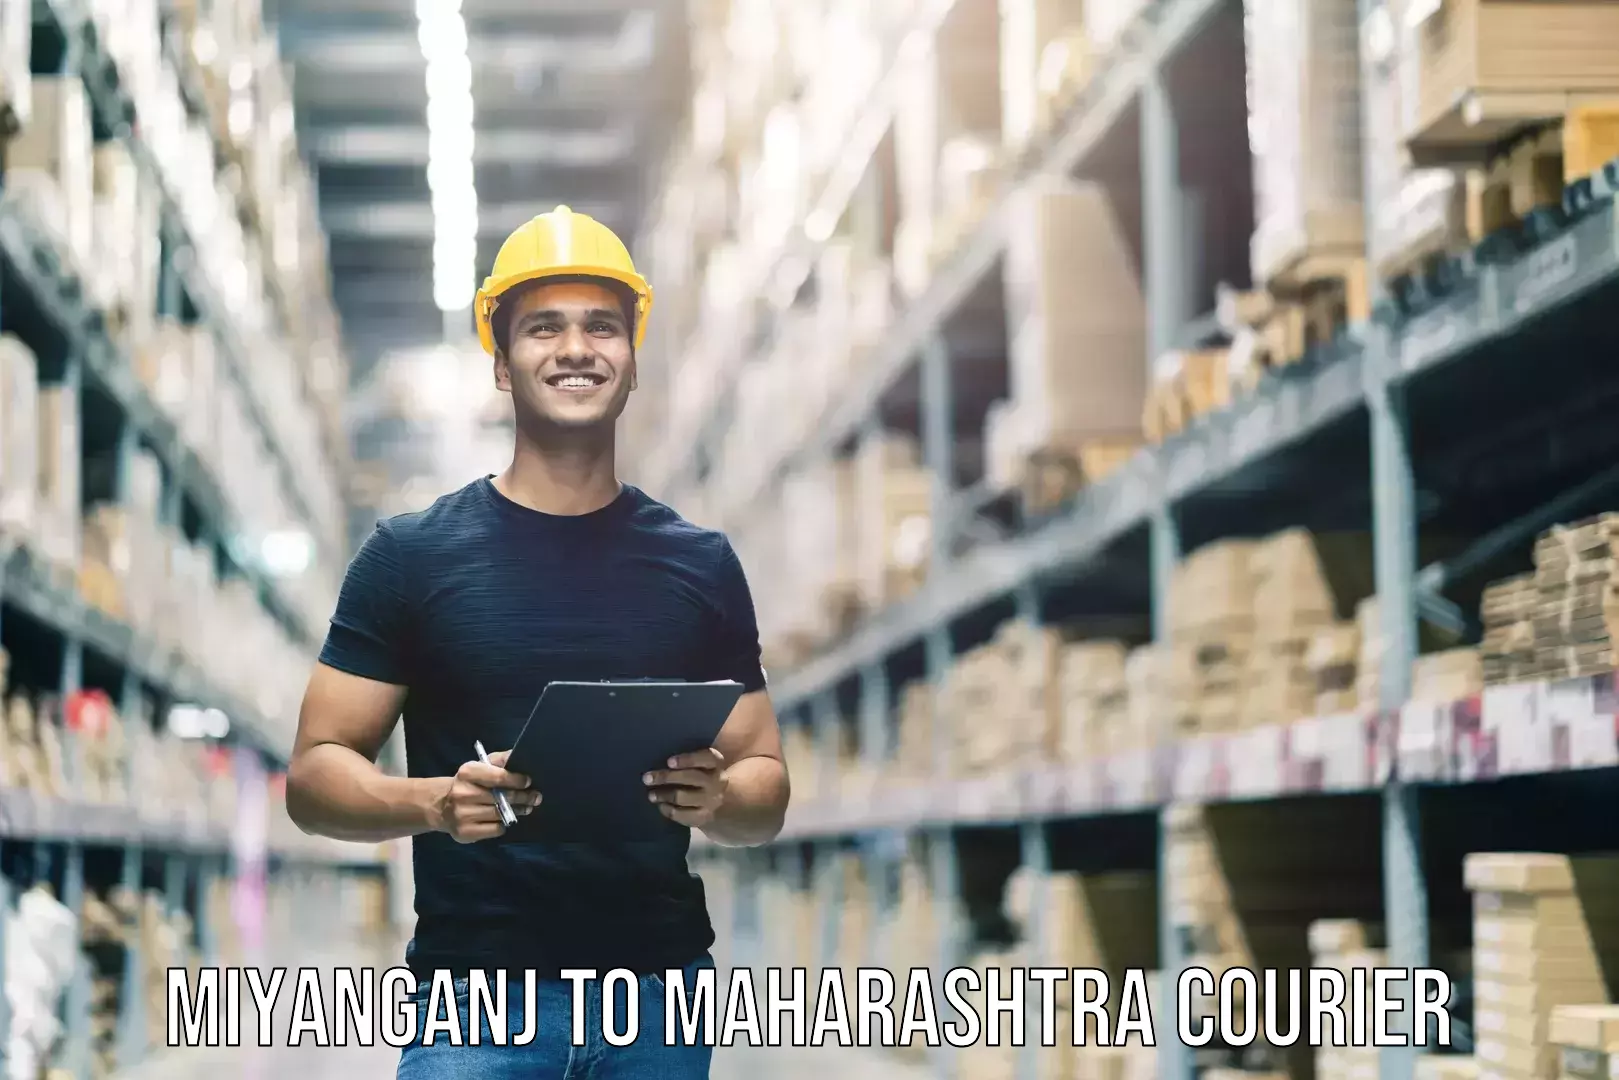 Baggage shipping calculator Miyanganj to Maharashtra